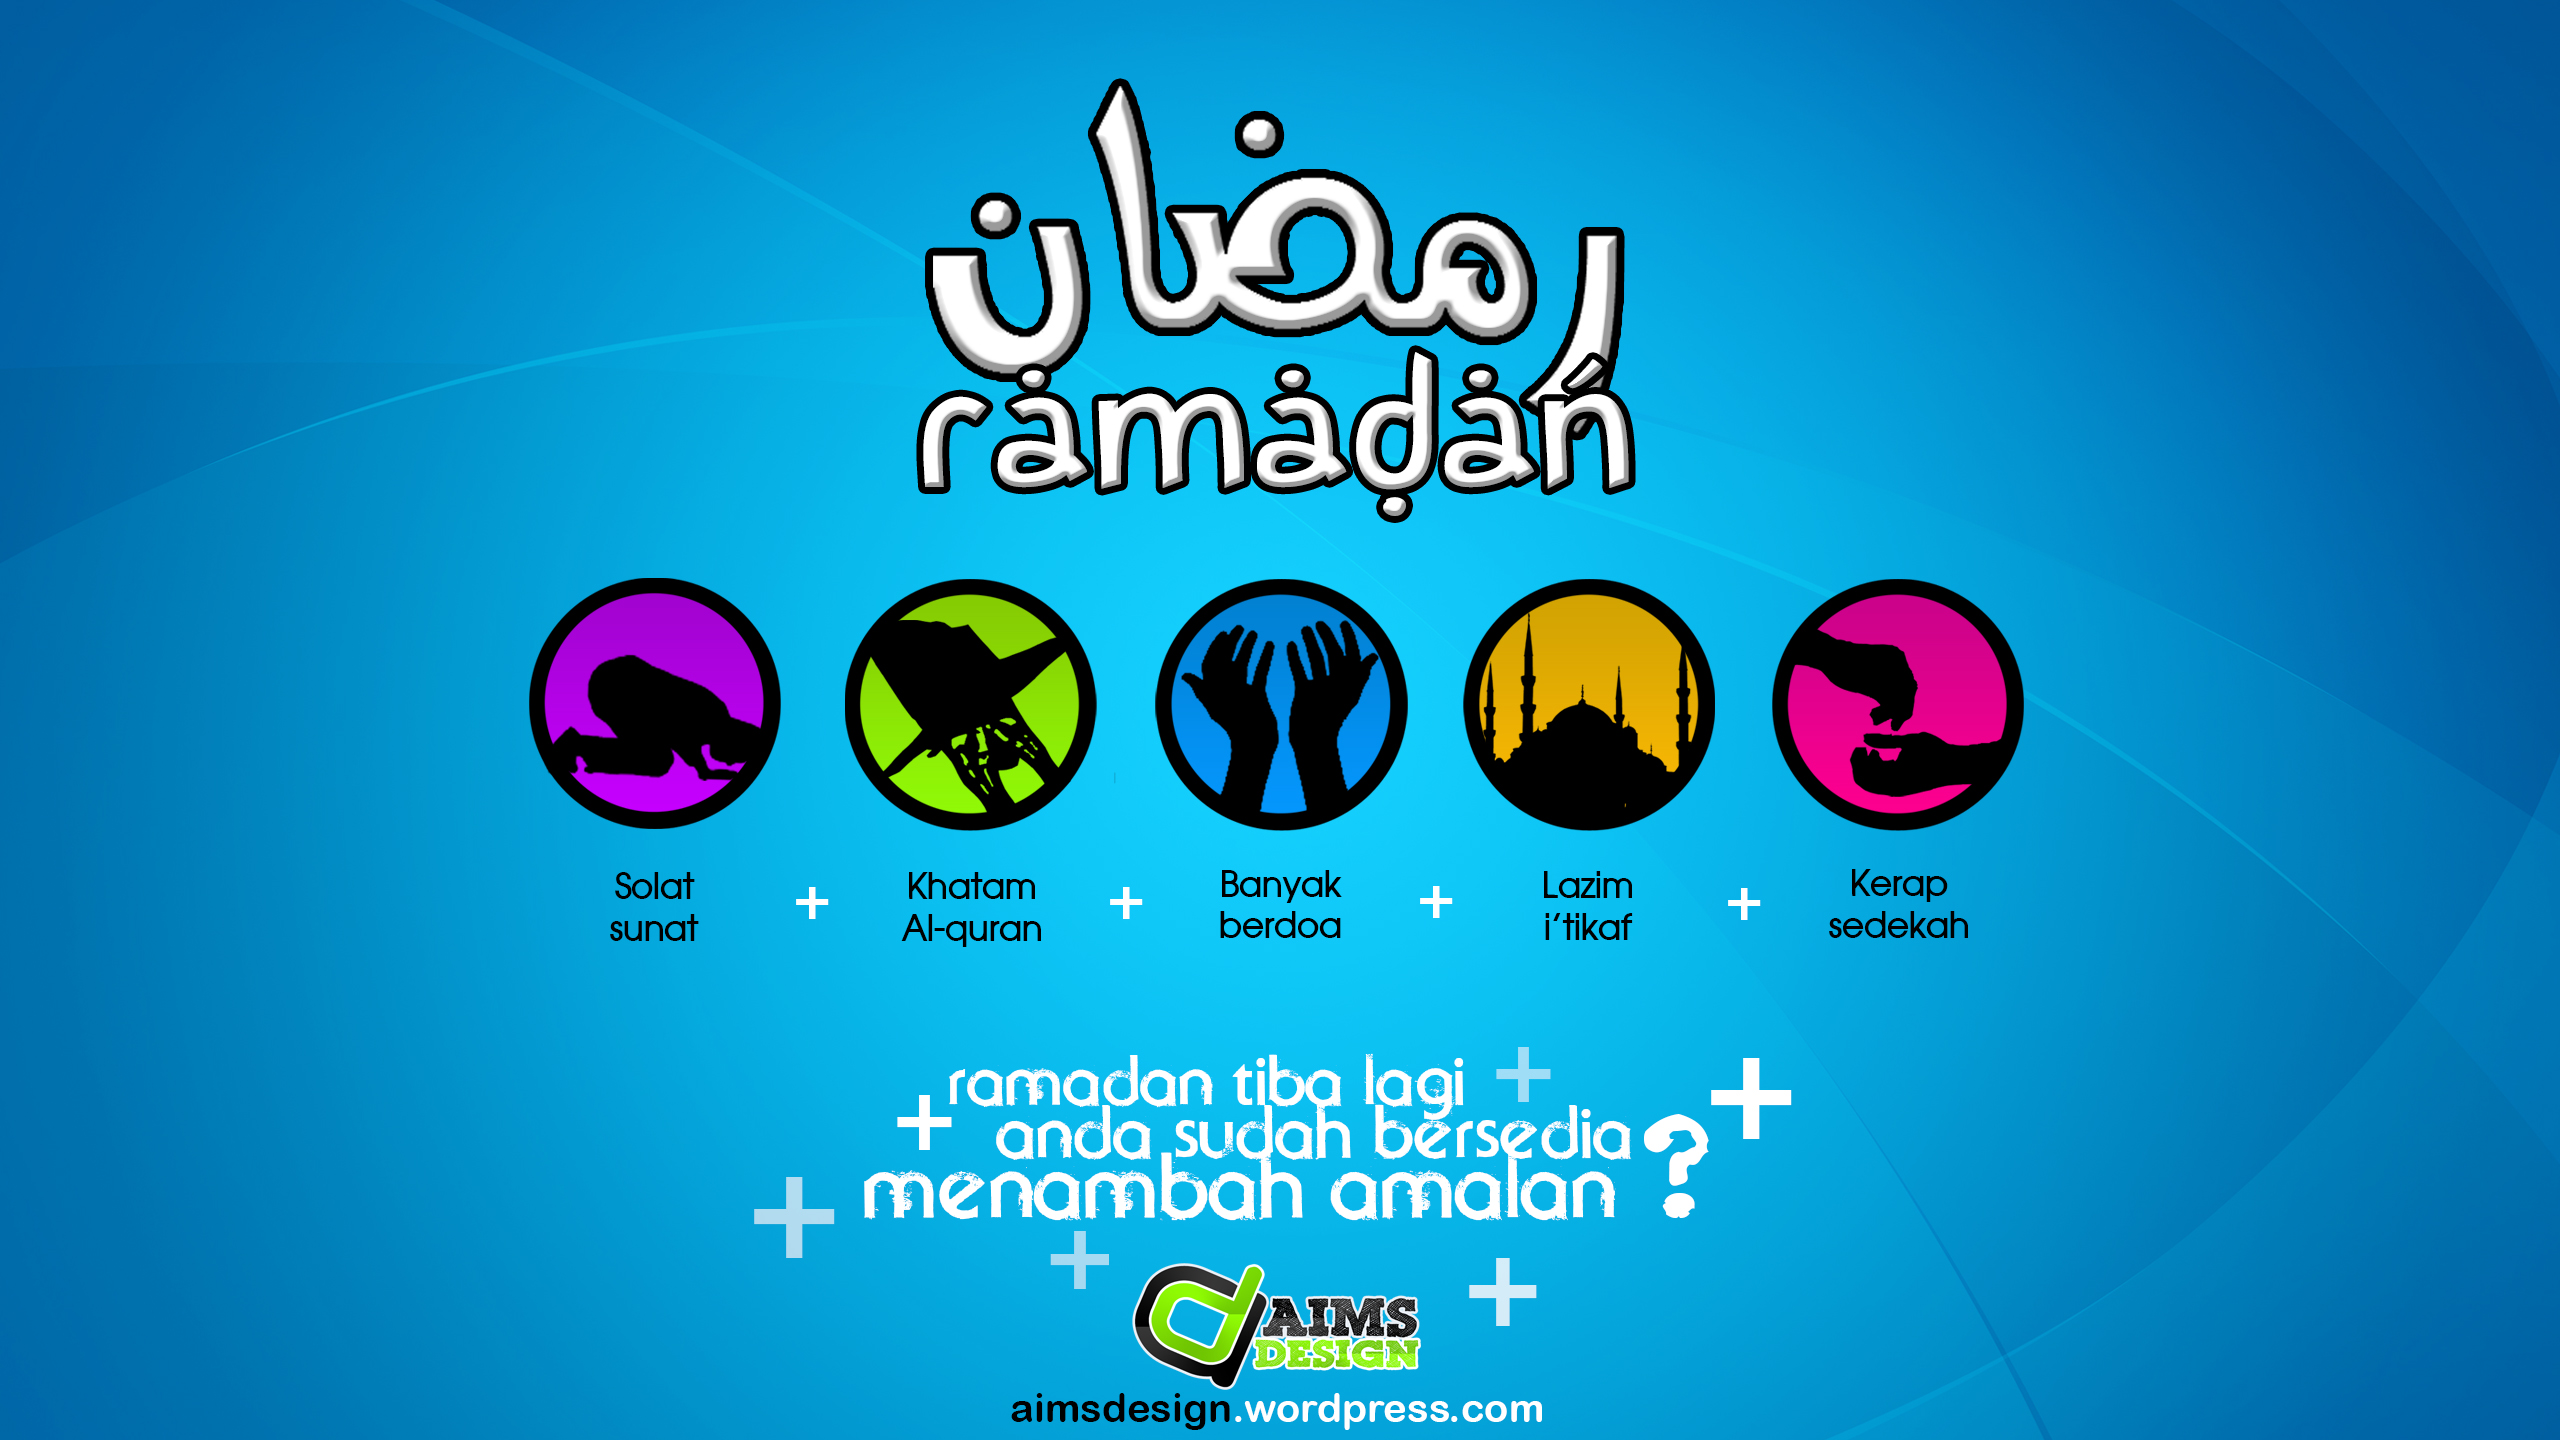 Ramadan waktu menambah amal  aimsdesign